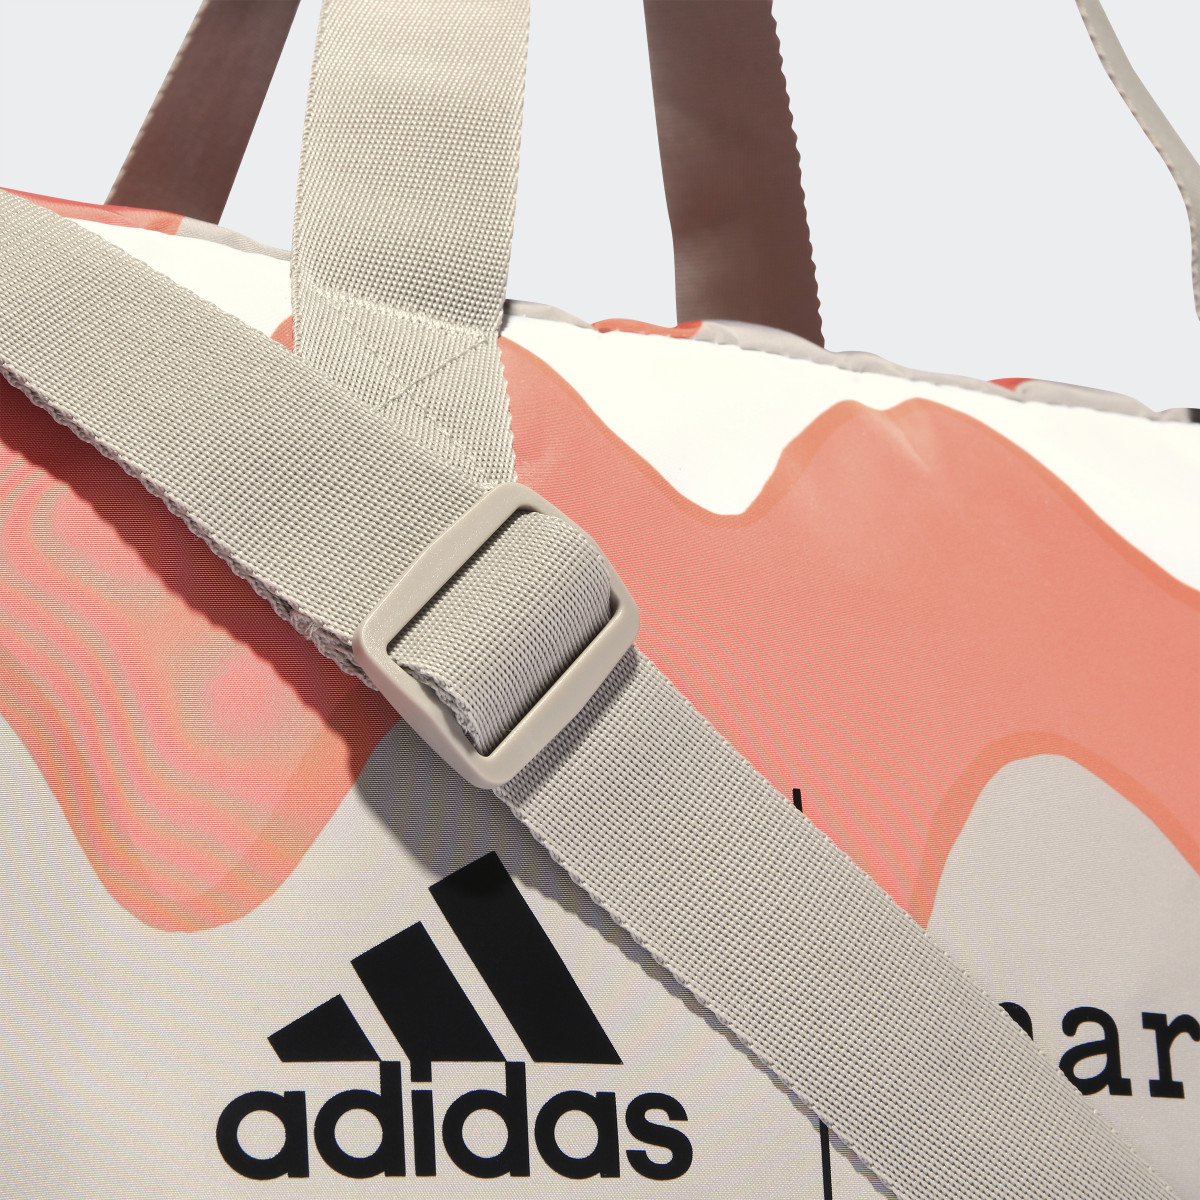 Adidas x Marimekko Shopper Designed 2 Move Training Bag. 7